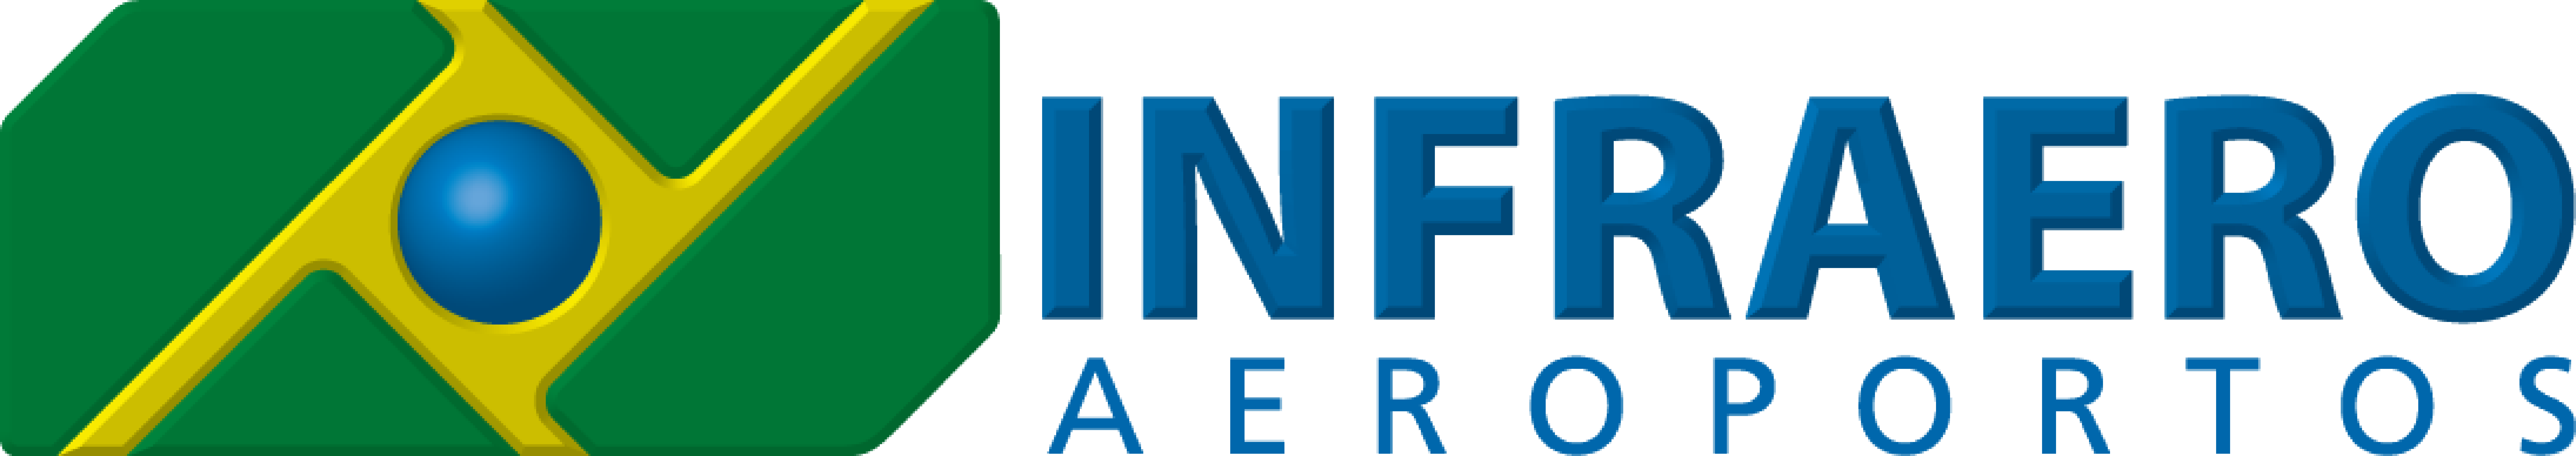 Logotipo da Infraero